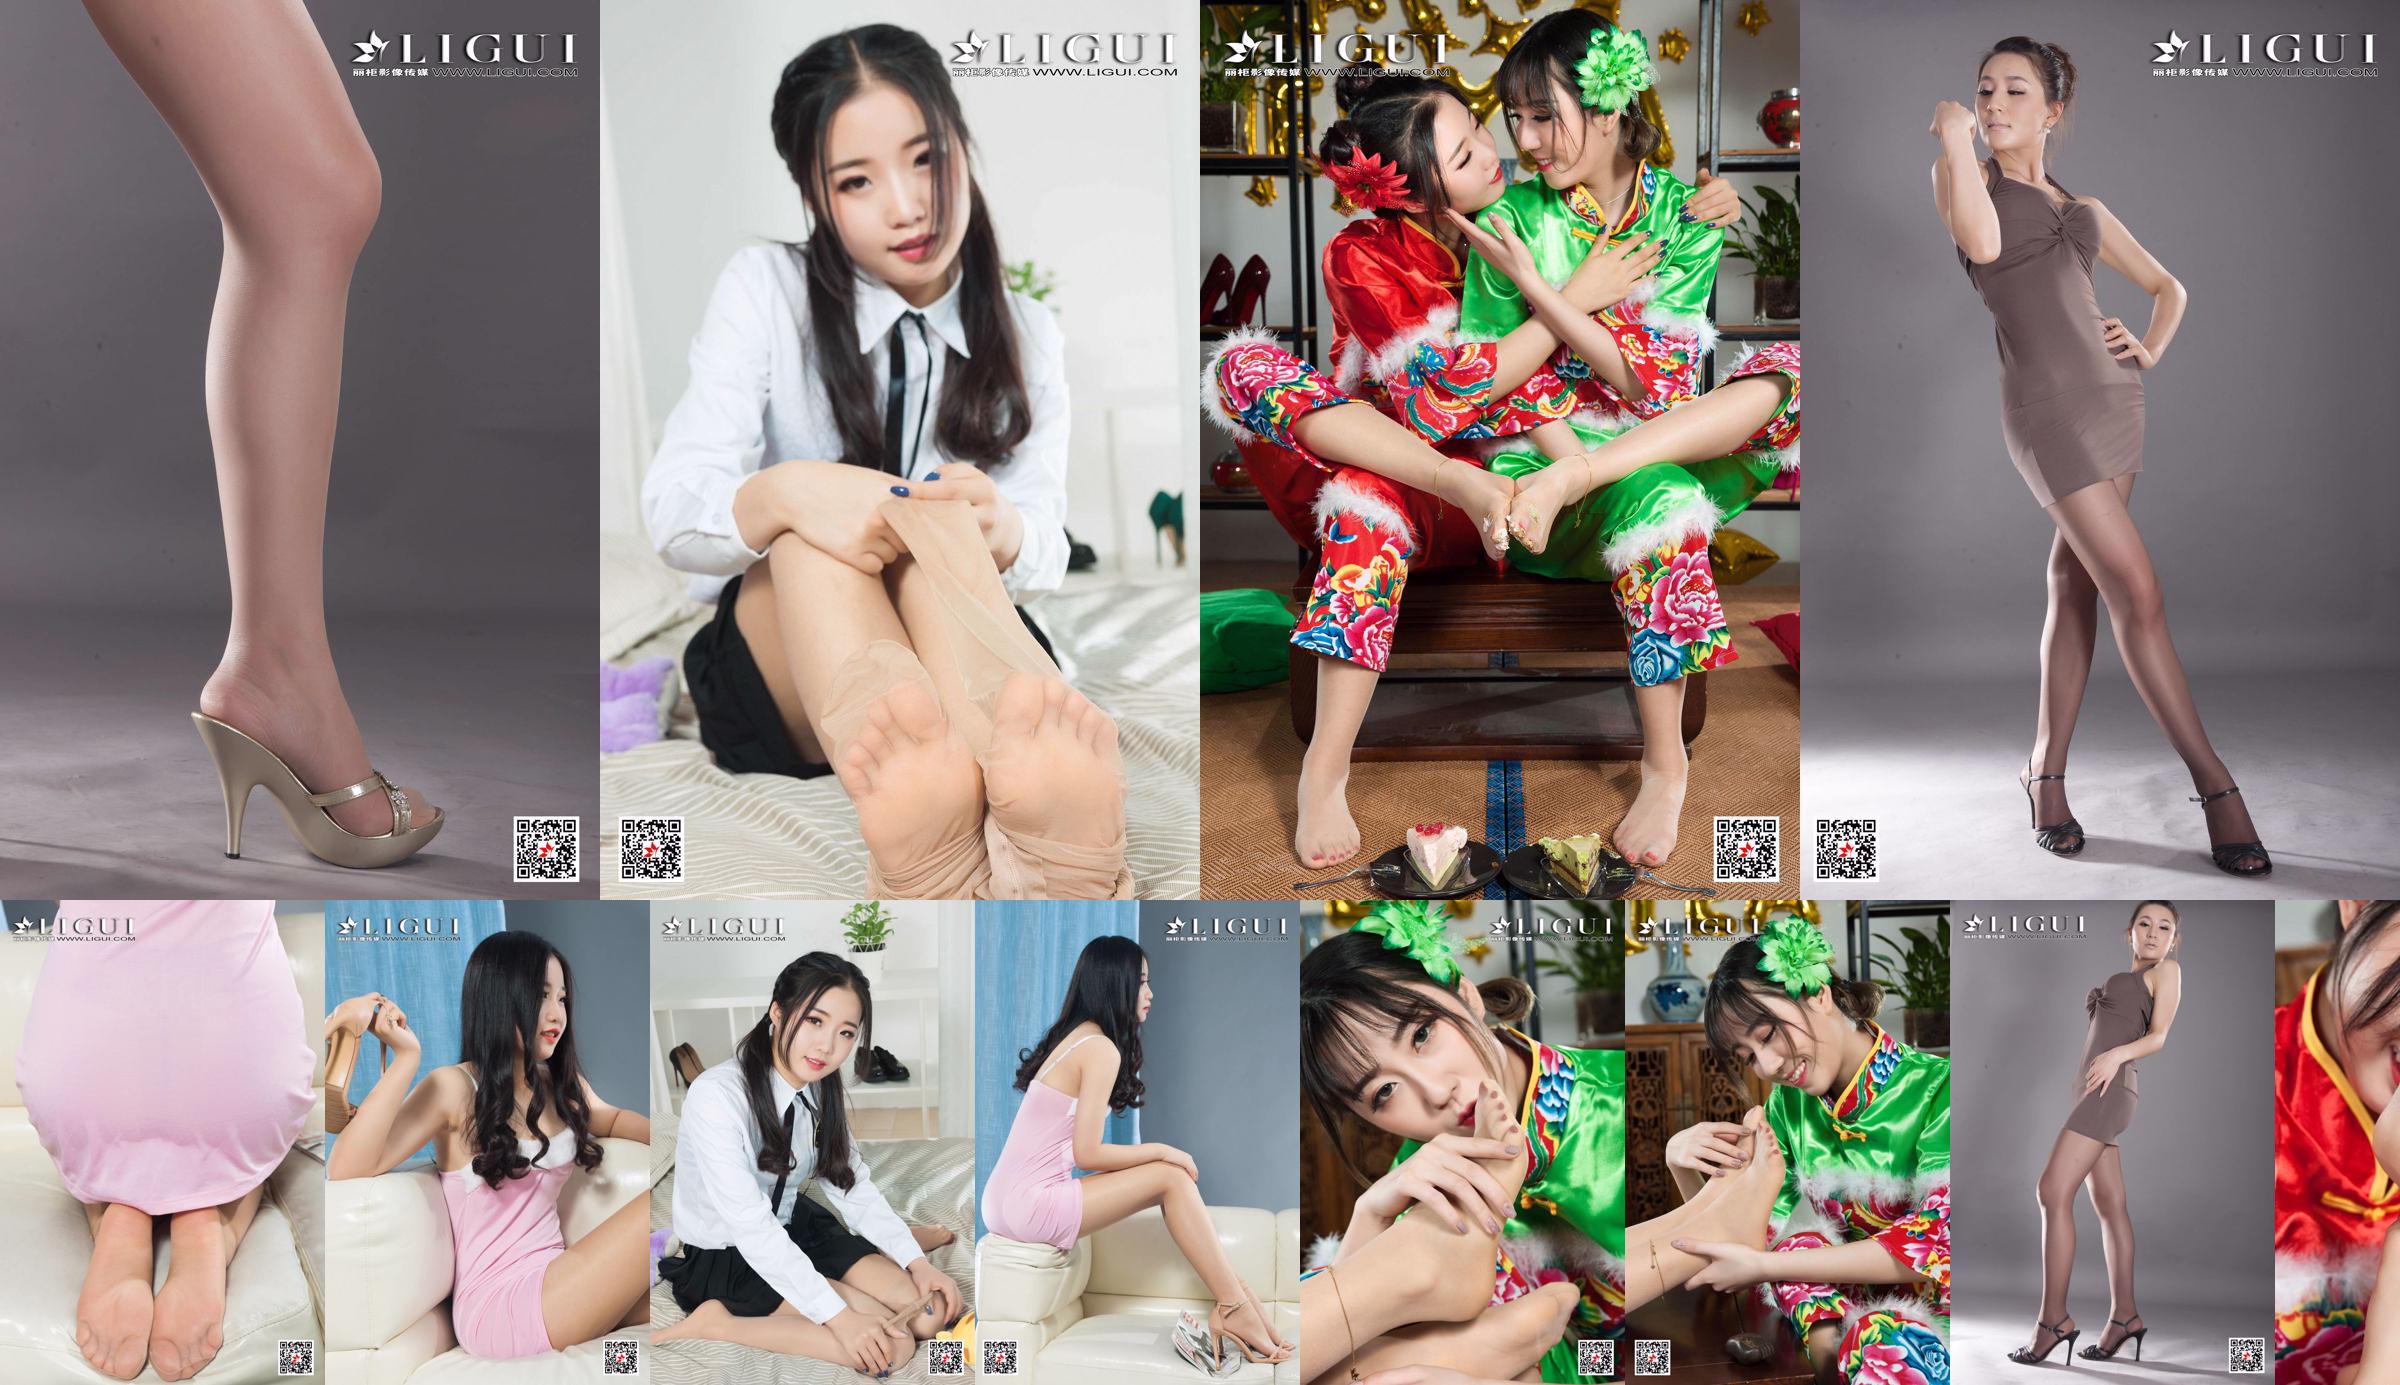 [丽 柜 Ligui] Model Yuanyuan "Studio Shot Beauty" No.1c0b72 Seite 25